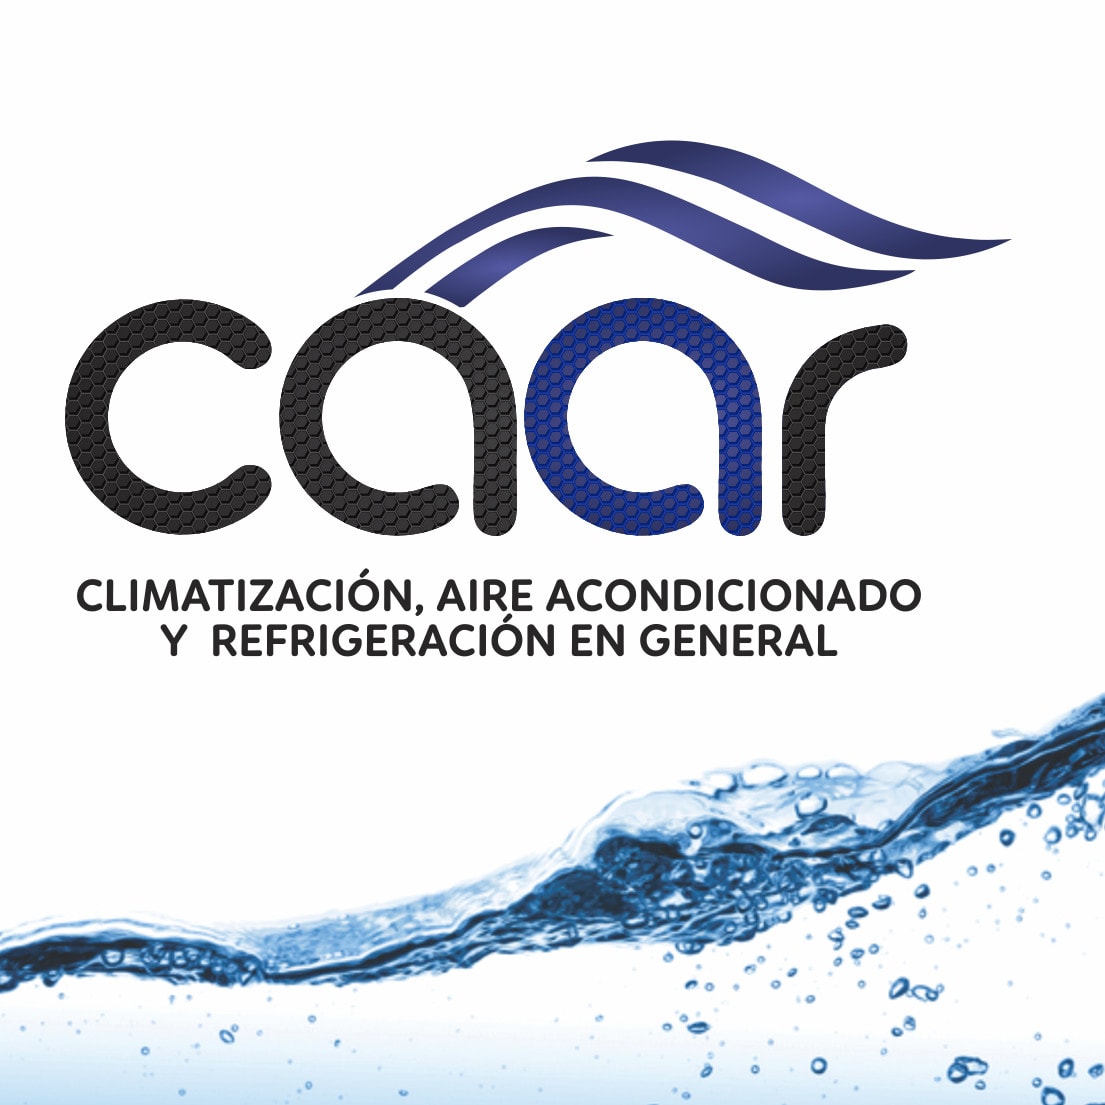 CAAR Climatización